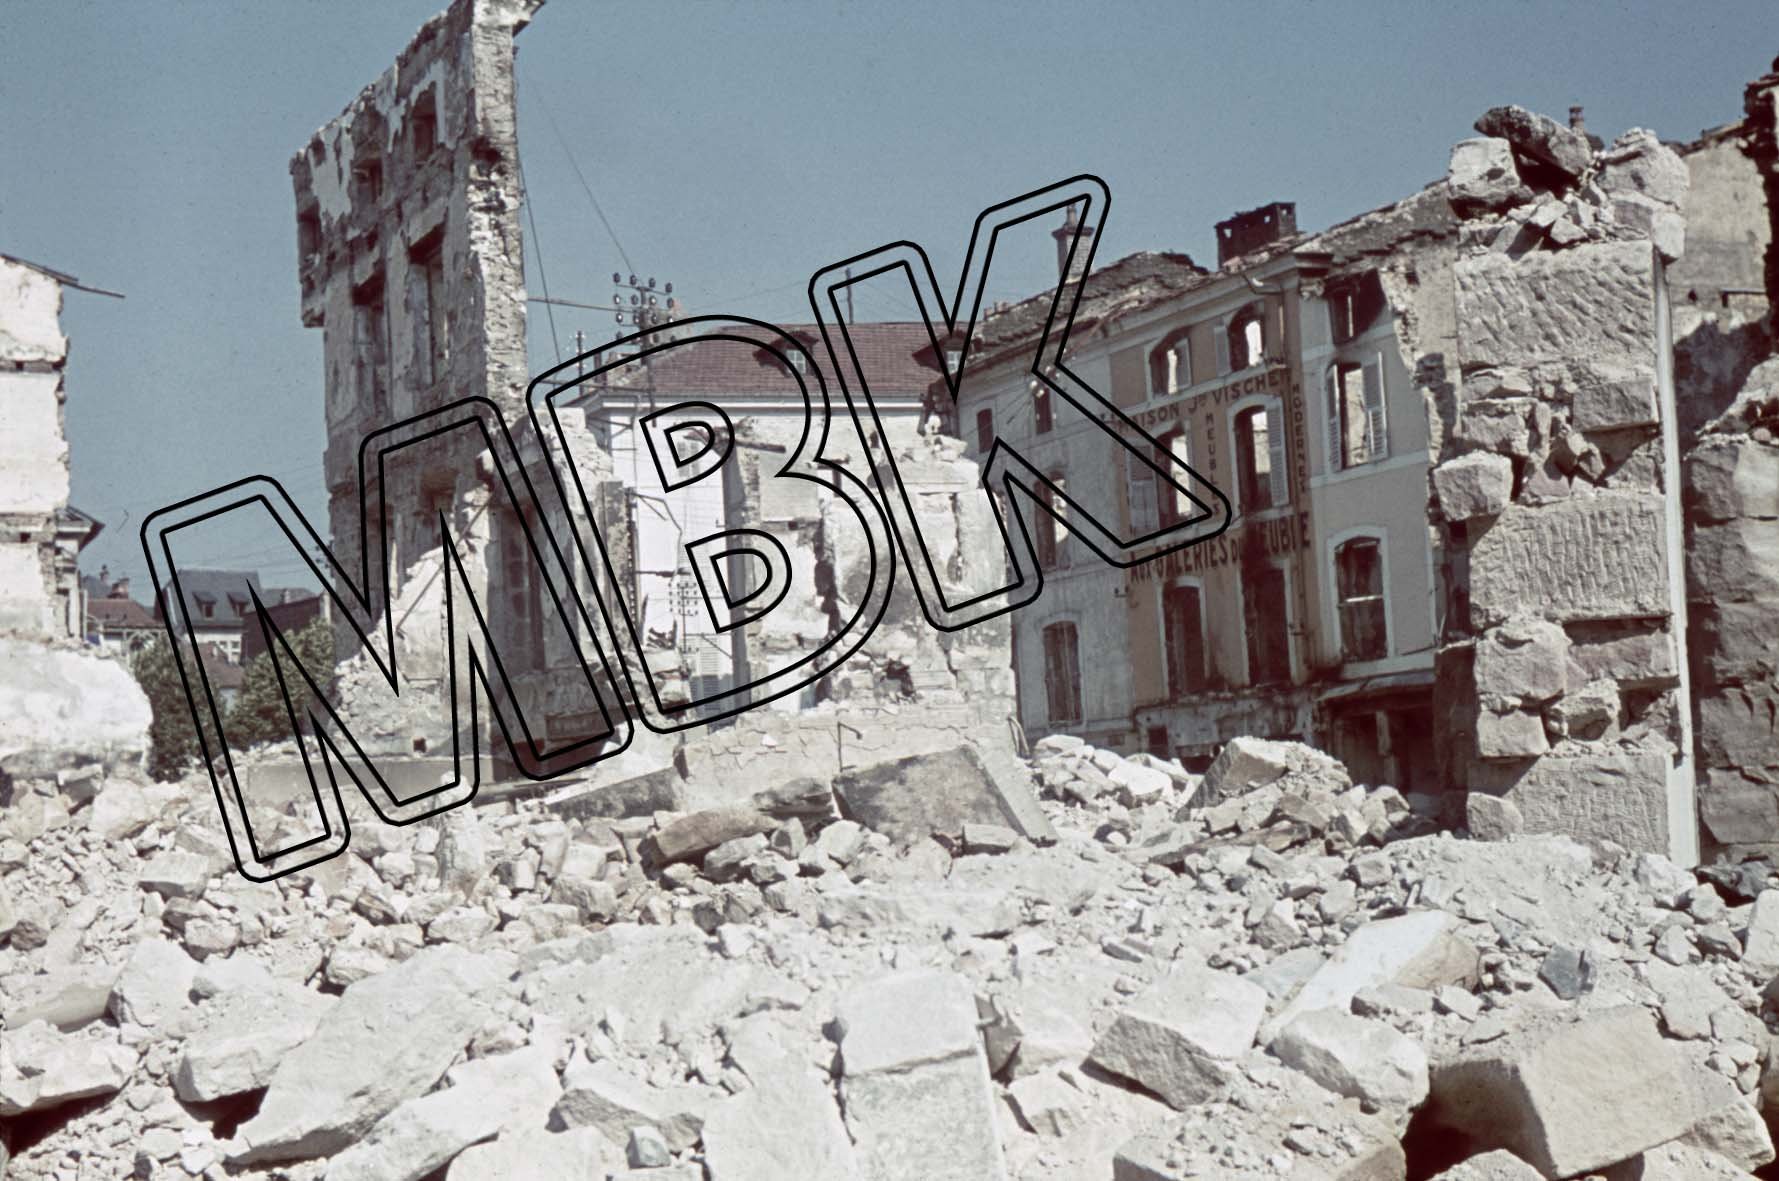 Fotografie: Zerstörungen in Épinal, Frankreich, Juli 1940 (Museum Berlin-Karlshorst RR-P)